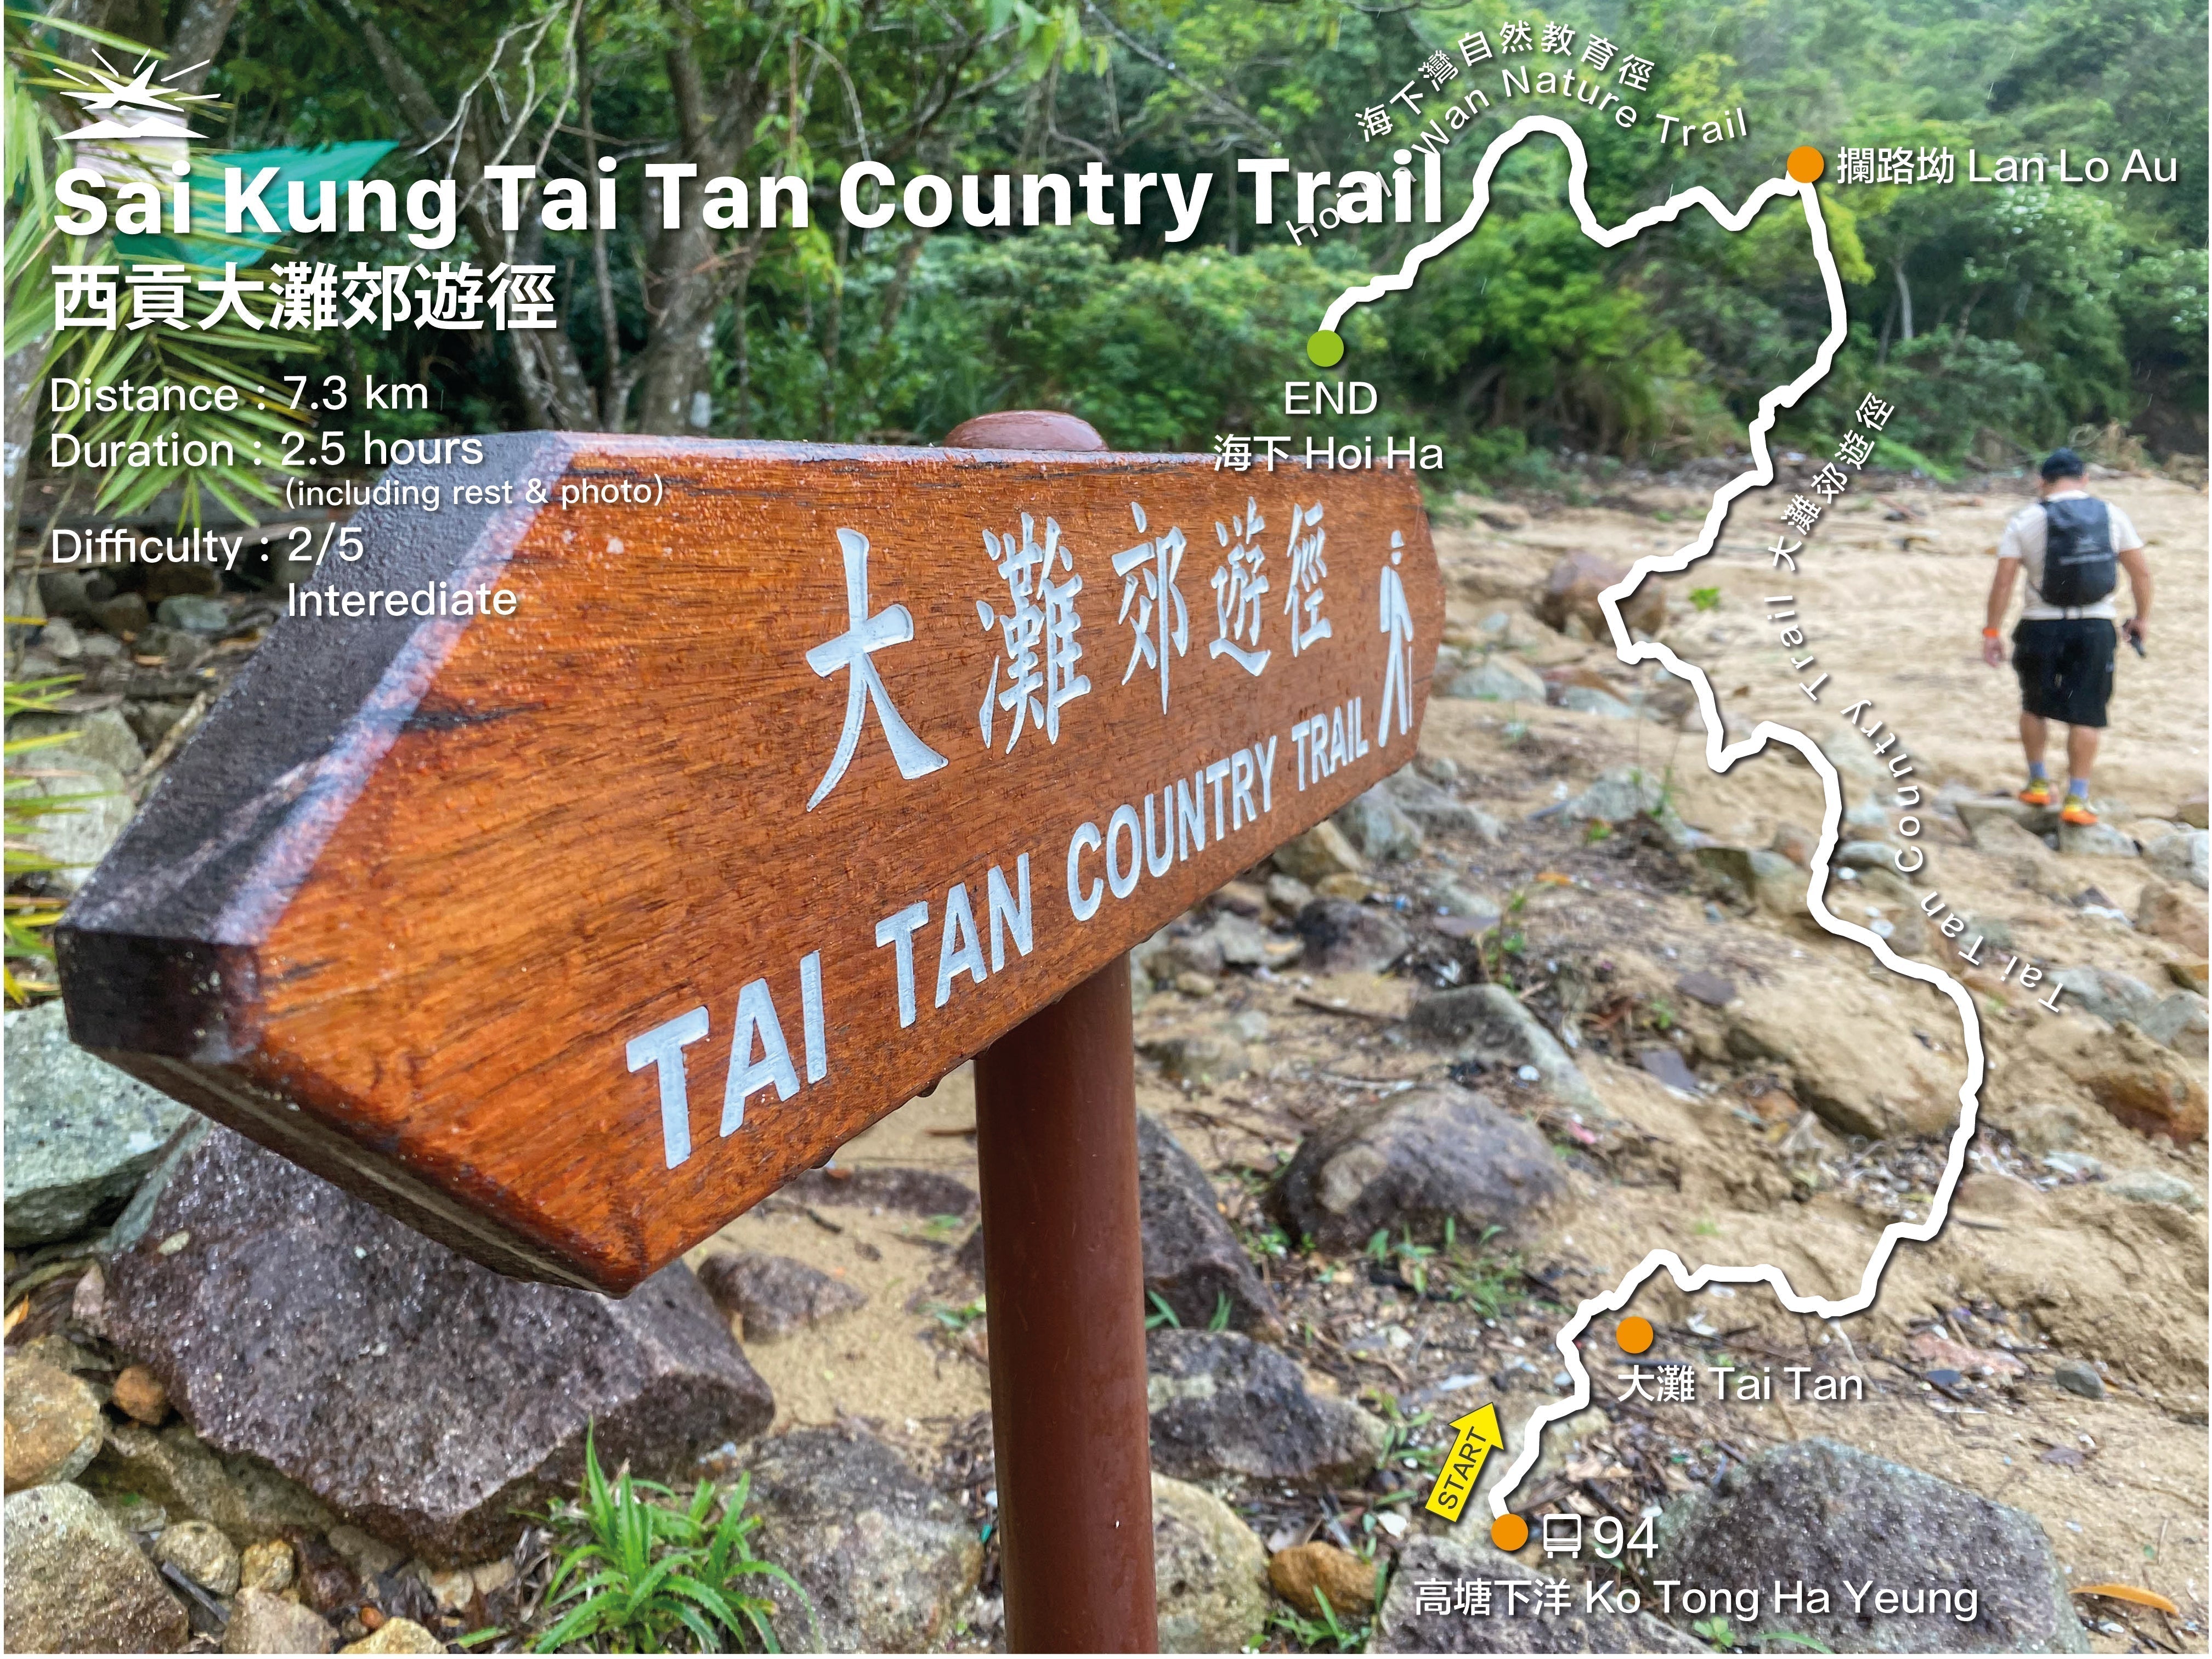 Sai Kung Tai Tan Country Trail to Hoi Ha